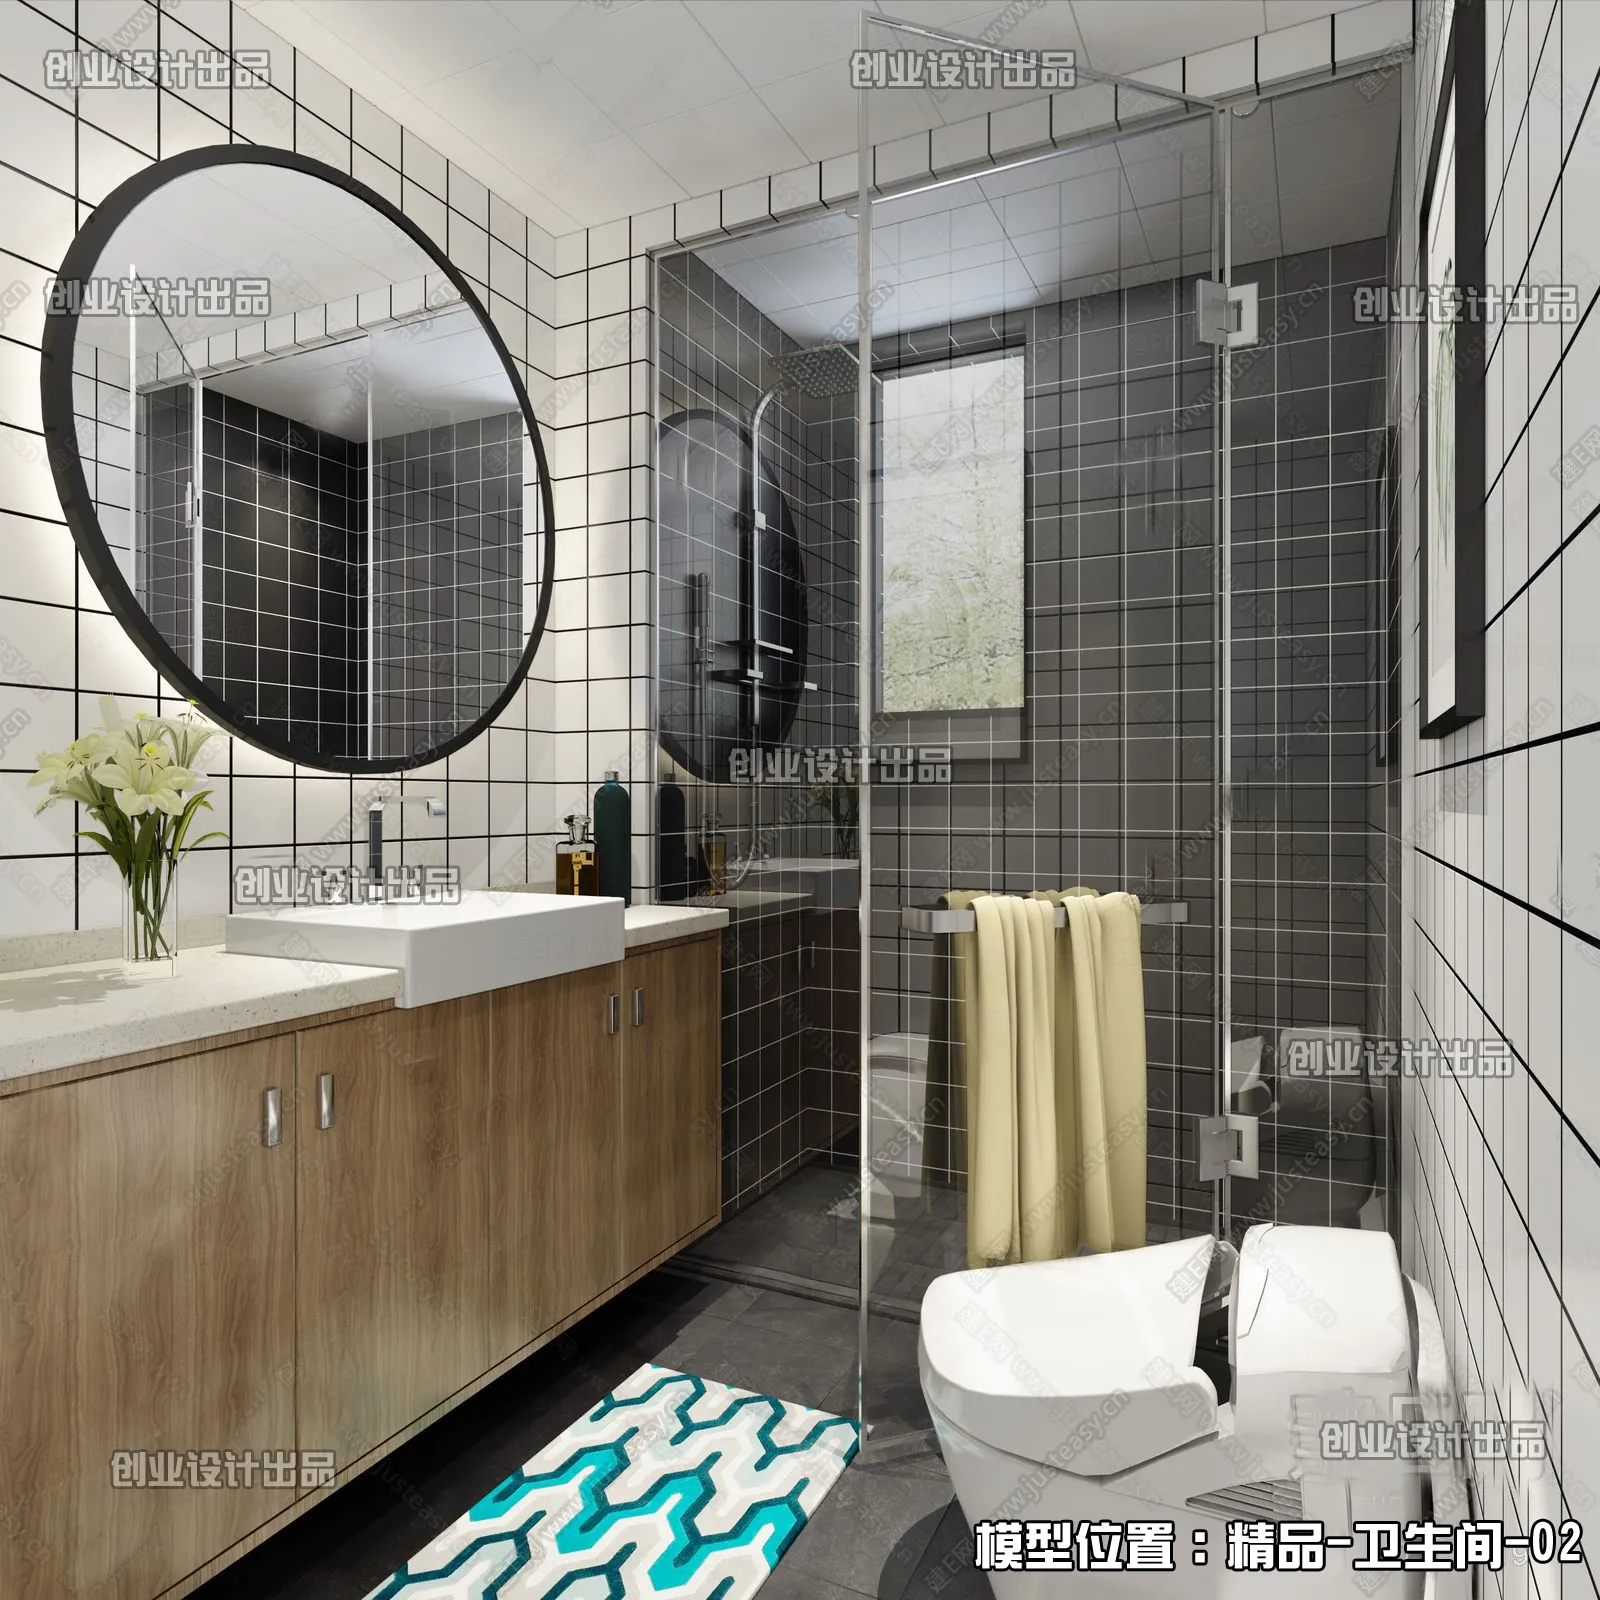 Bathroom – Scandinavian architecture – 023